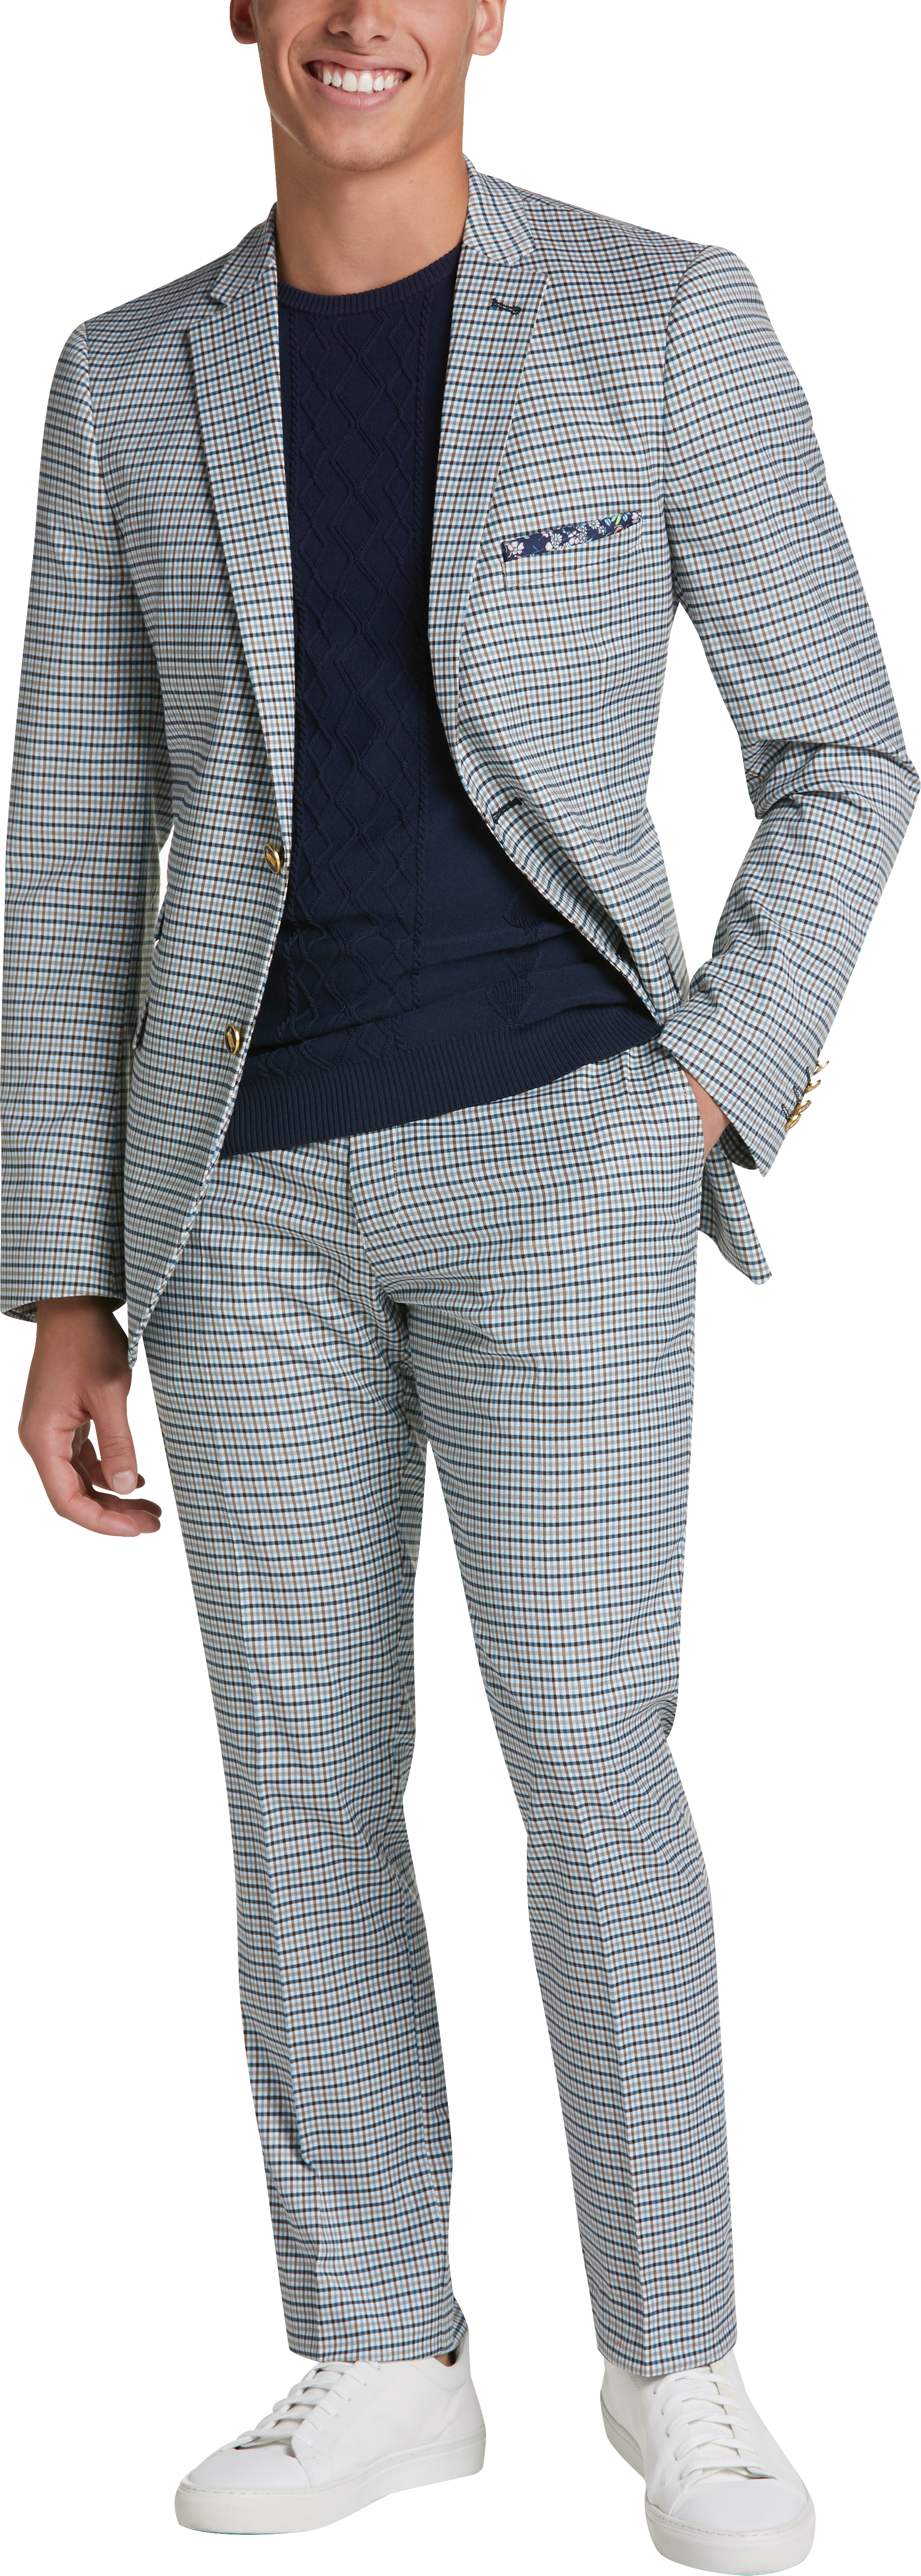 Paisley & Gray Slim Fit Suit Separates Coat, Teal Check - Men's Suits ...